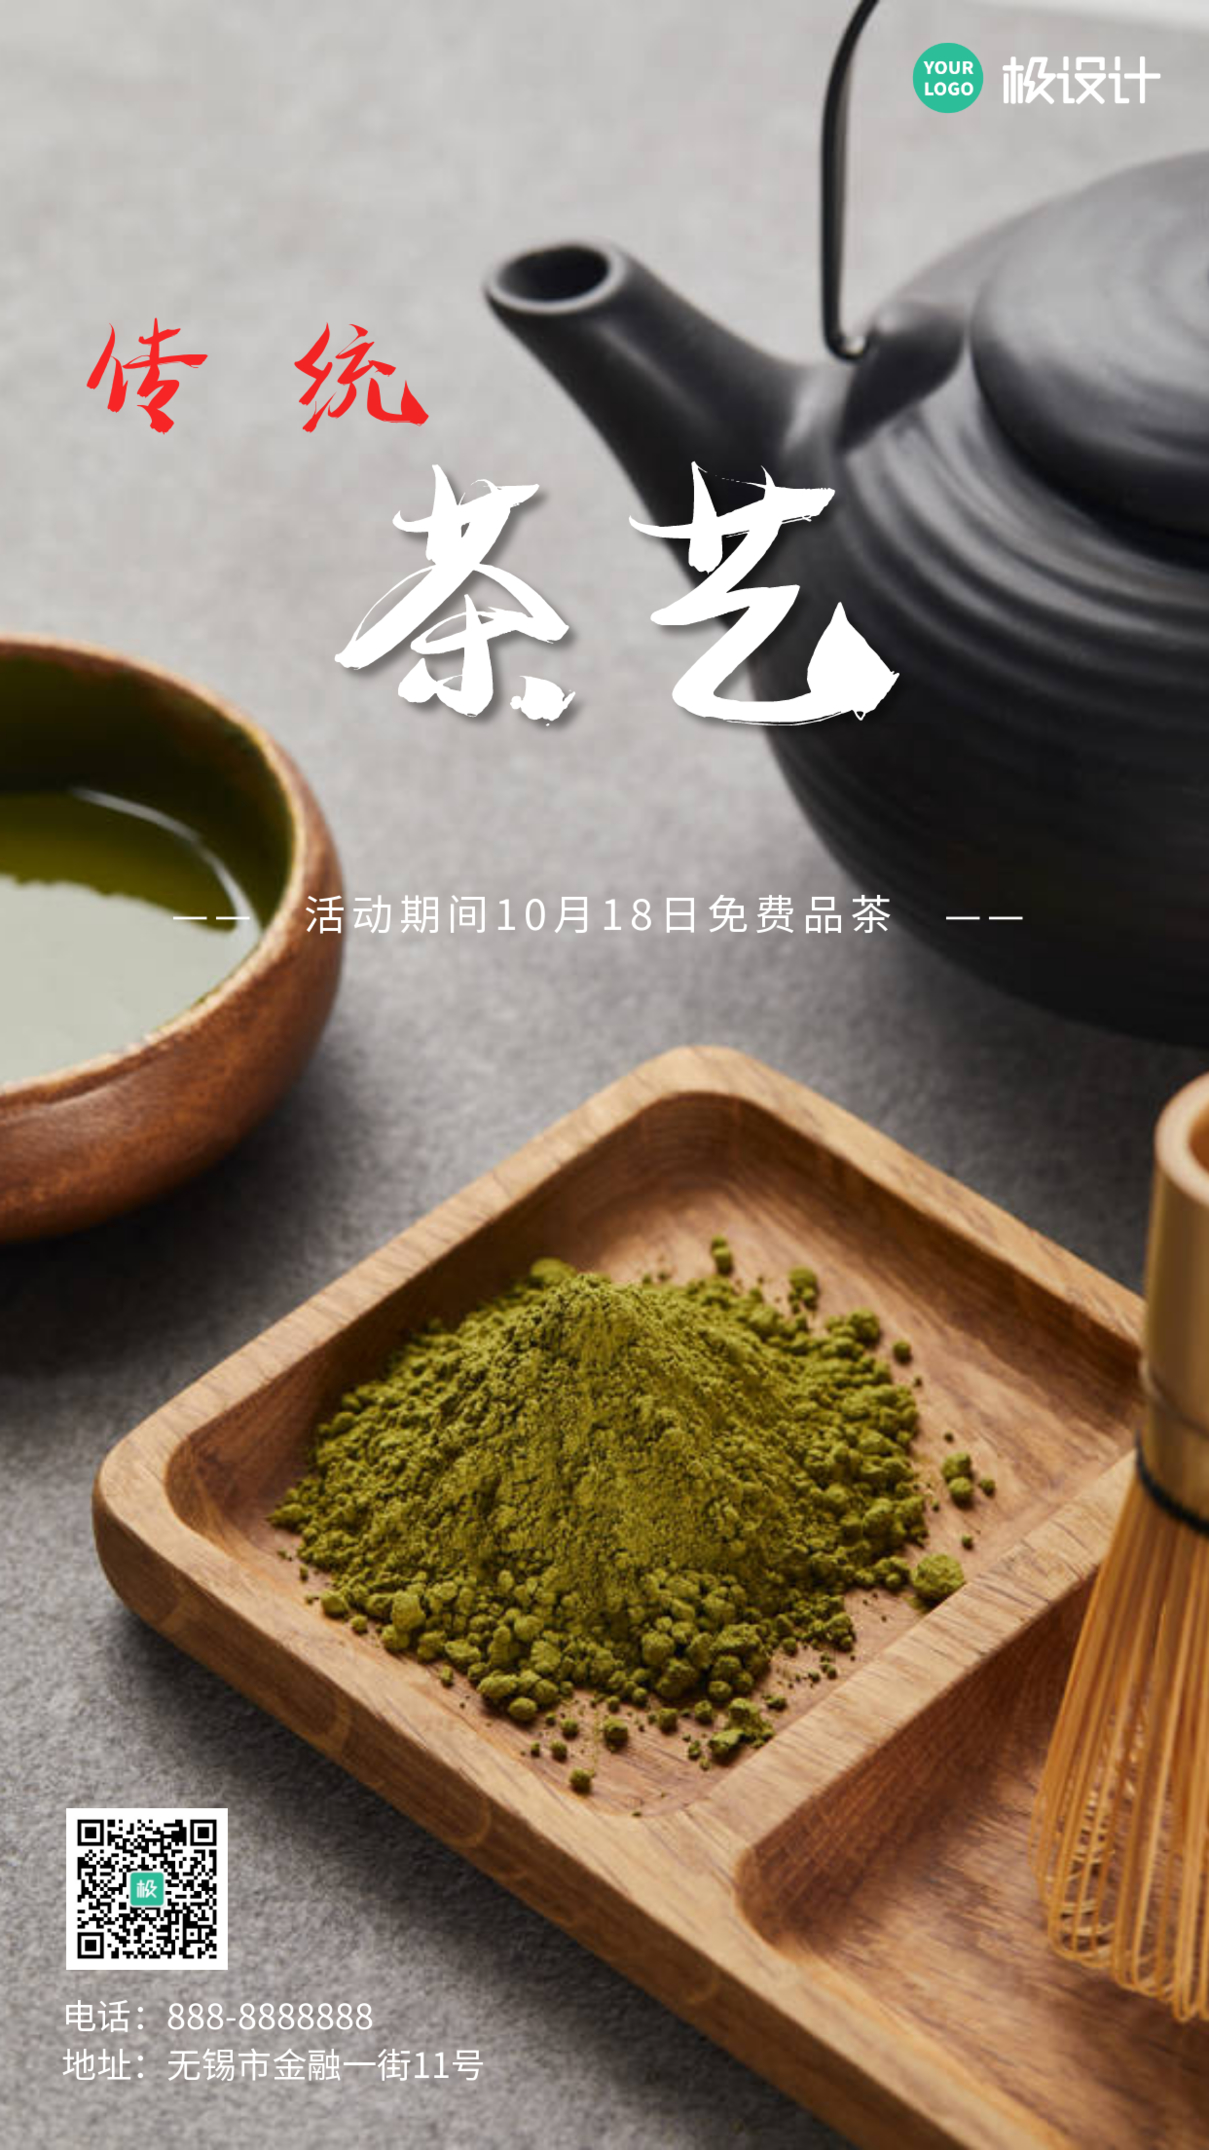 传统茶艺红色配图简约大气宣传海报